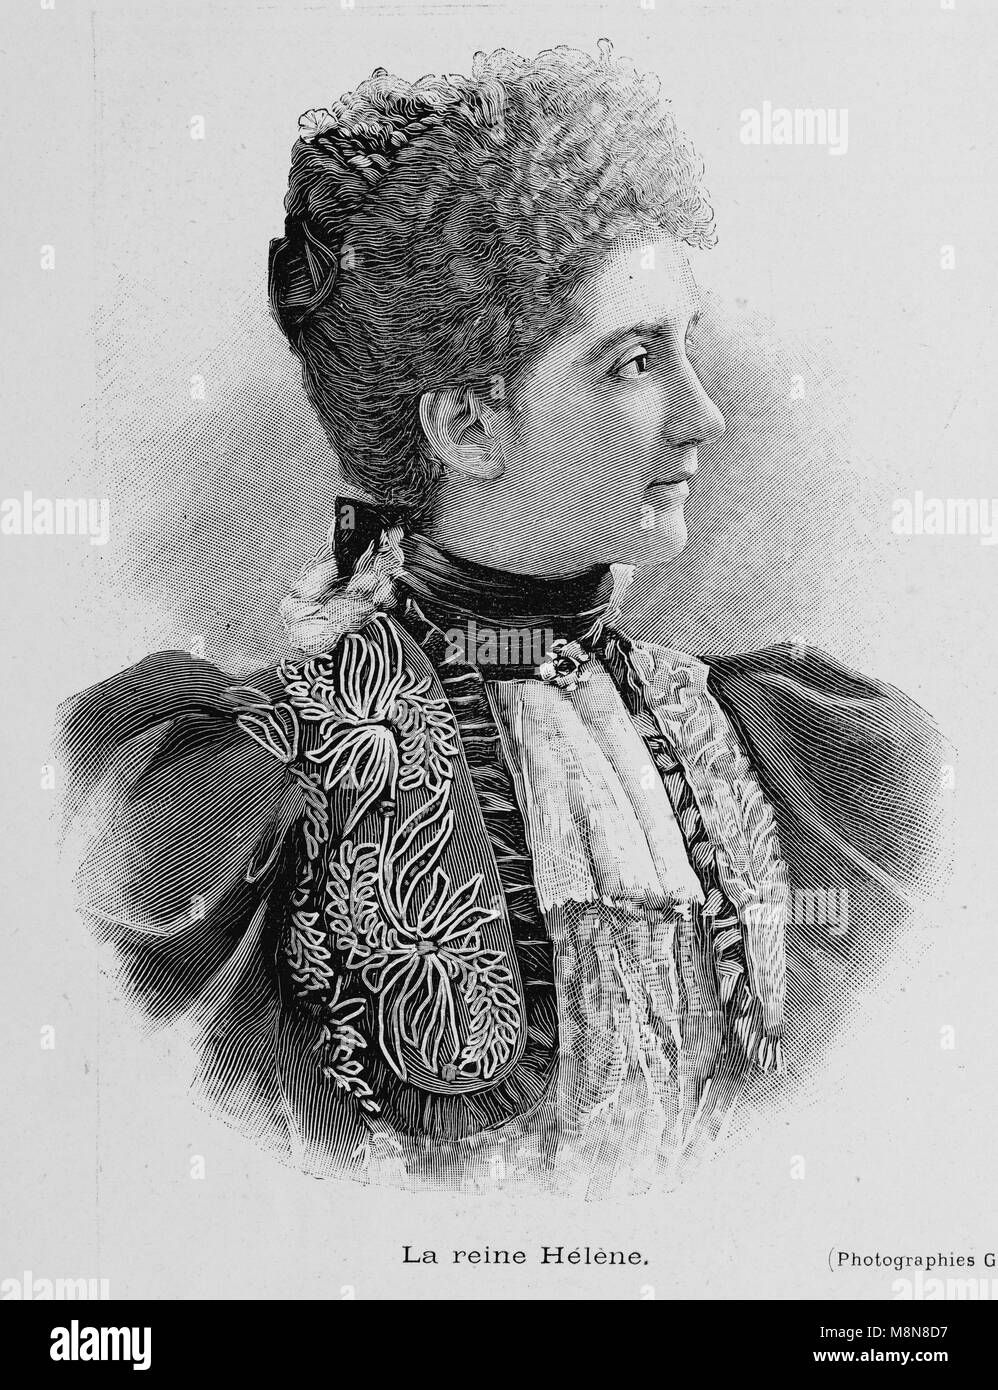 Königin Elena von Montenegro, die Frau von König Viktor Emanuel III. von Italien, Bild aus der Französischen Wochenzeitung l'Illustration, 4. August 1900 Stockfoto